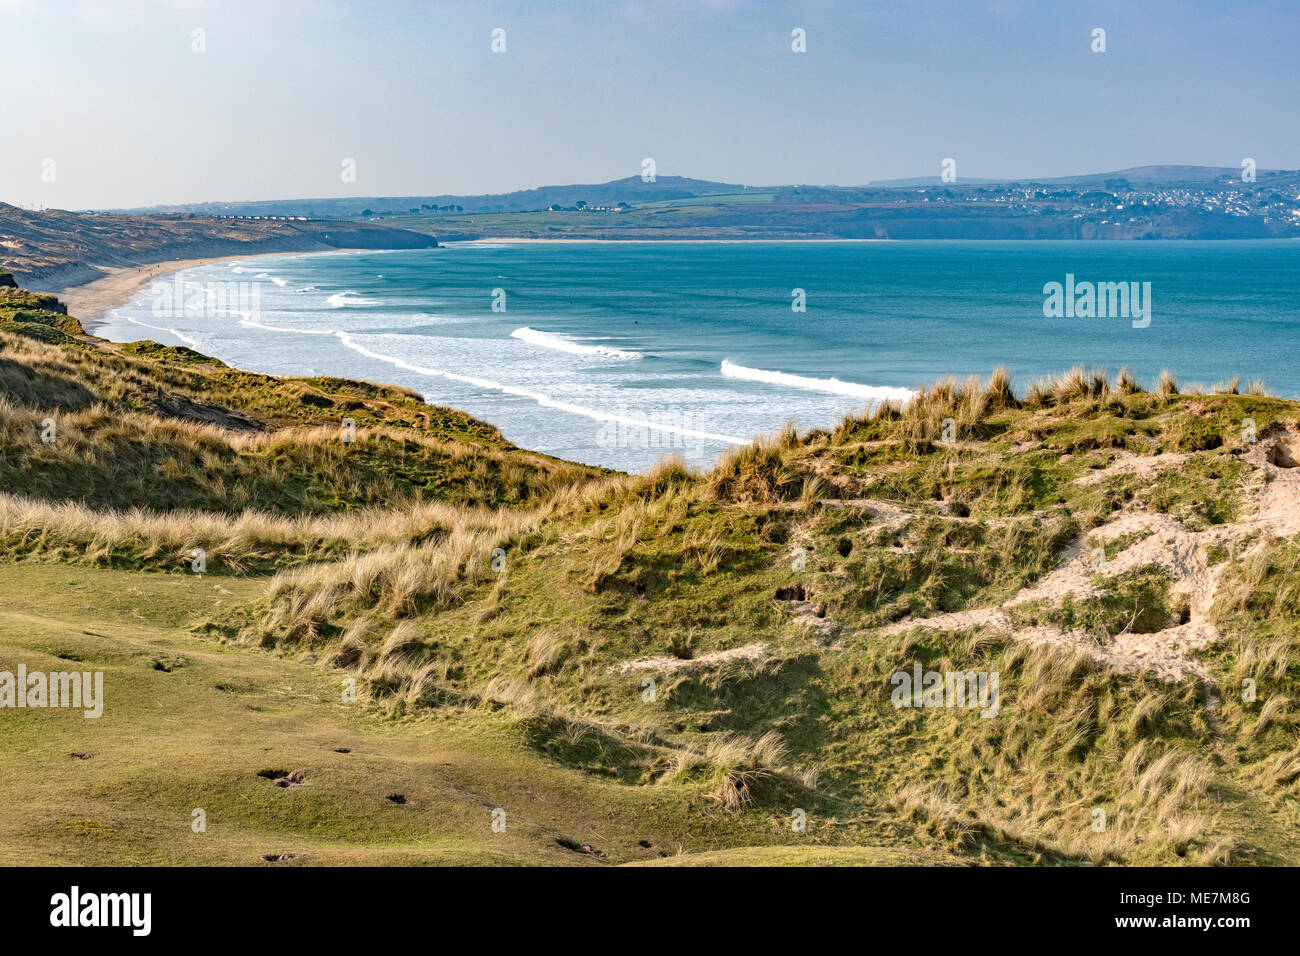 Dunes de sable de la réserve naturelle, towans gwithian hayle, Cornwall, Angleterre, Grande-Bretagne, Royaume-Uni. Banque D'Images